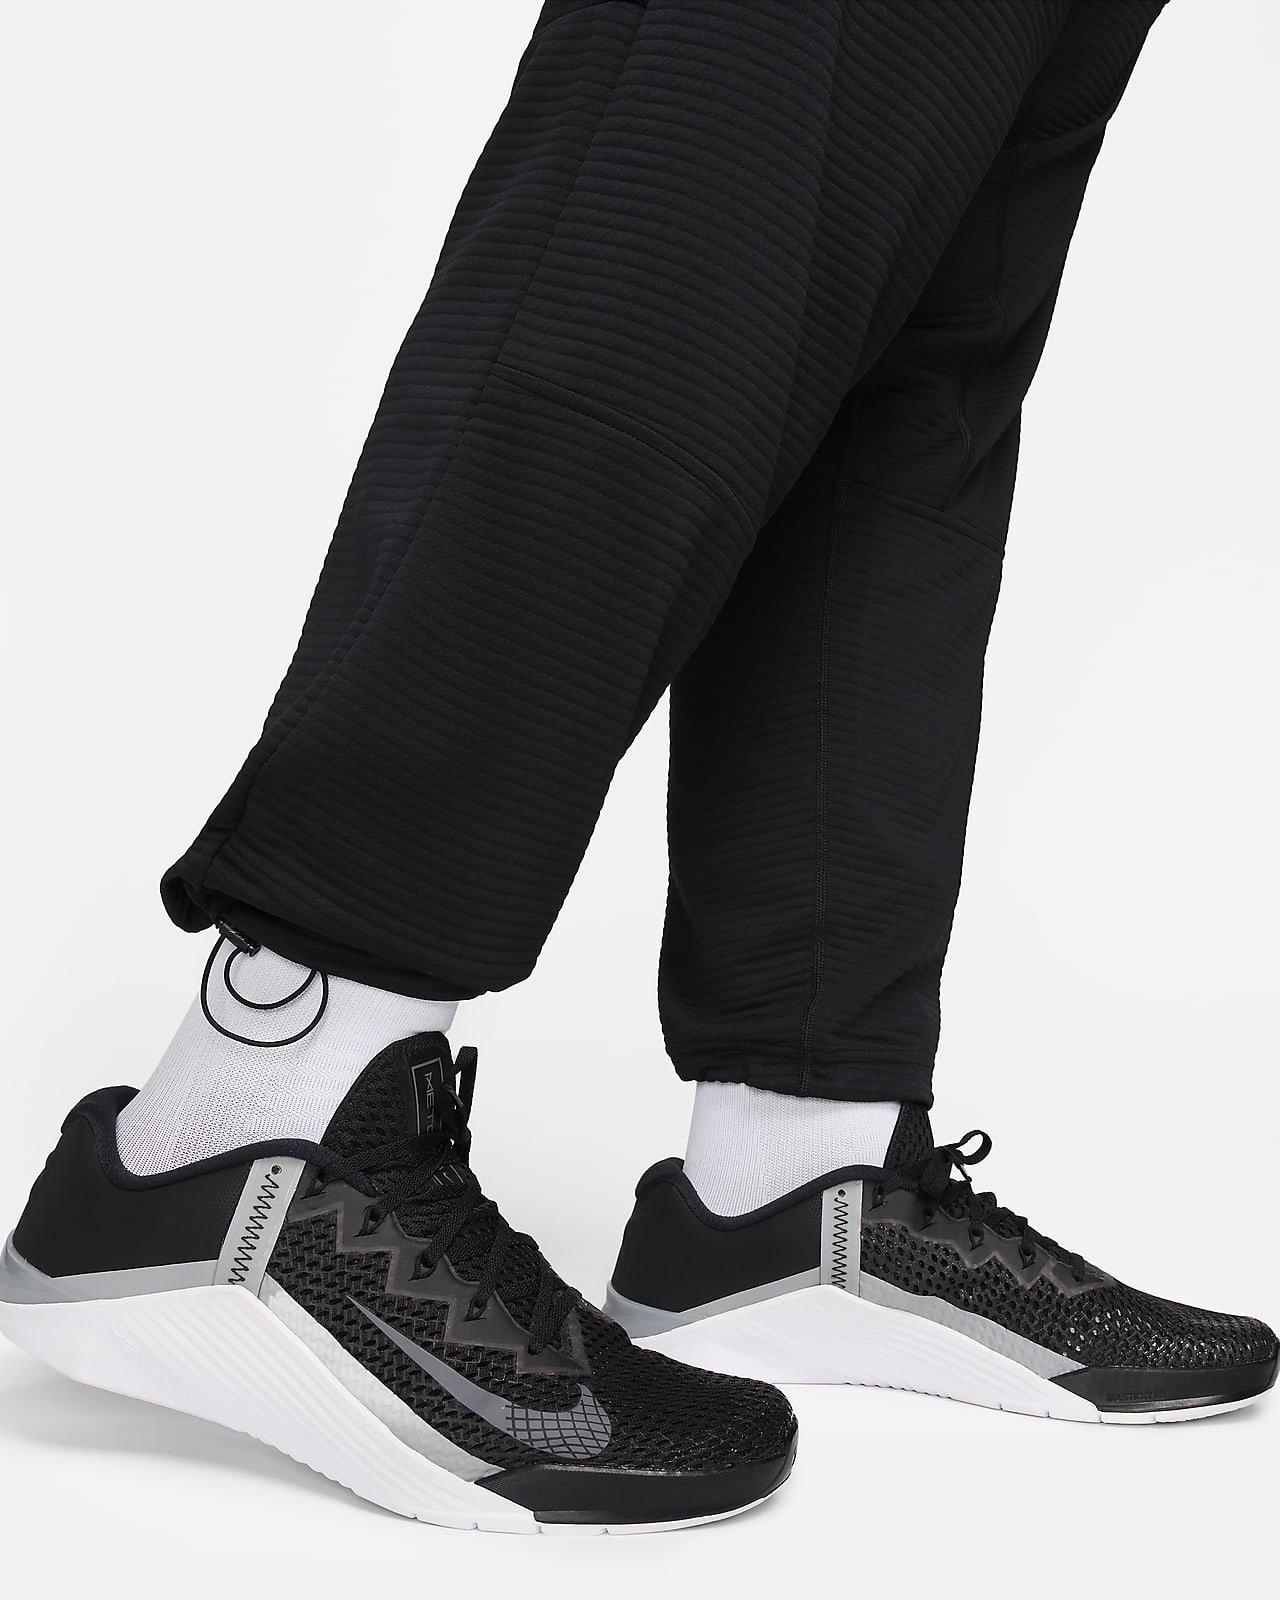 Nike Men's Dri-FIT Fleece Fitness Trousers. Nike CA